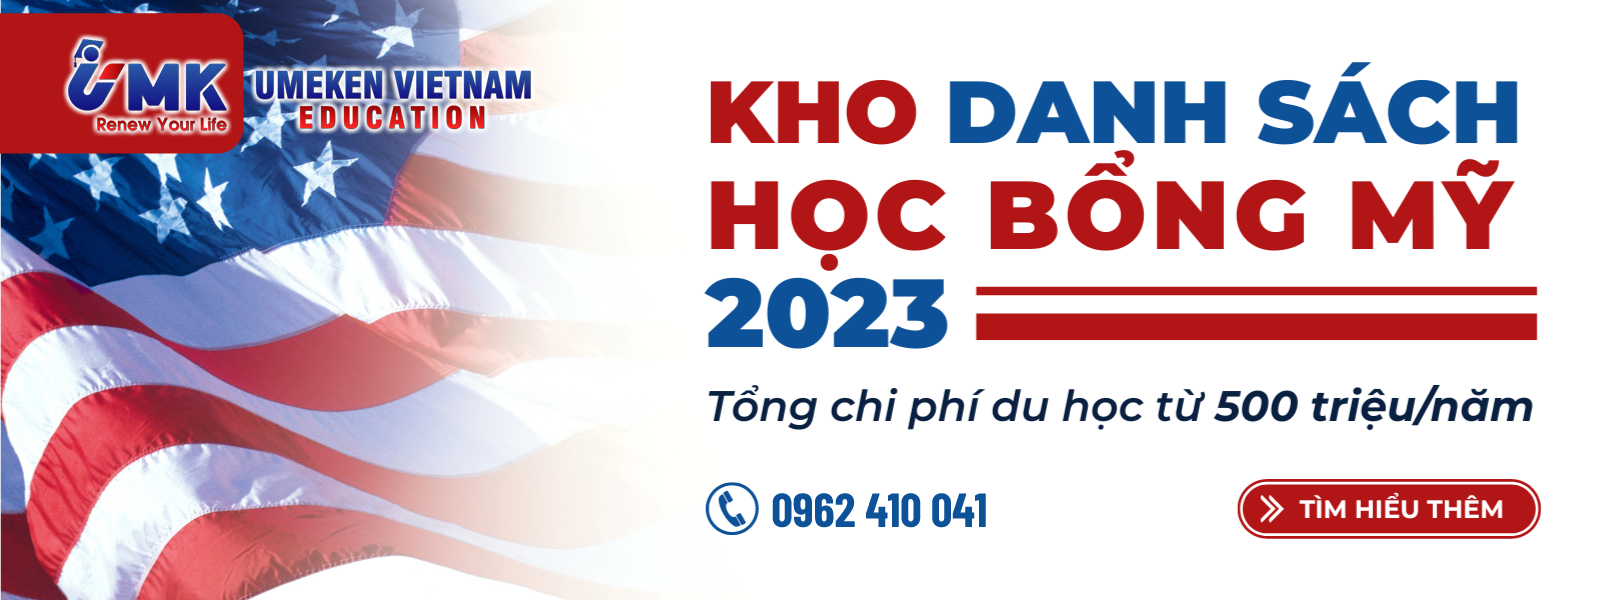 hoc bong du hoc my 2023 tu van du hoc umk 1600x600 1